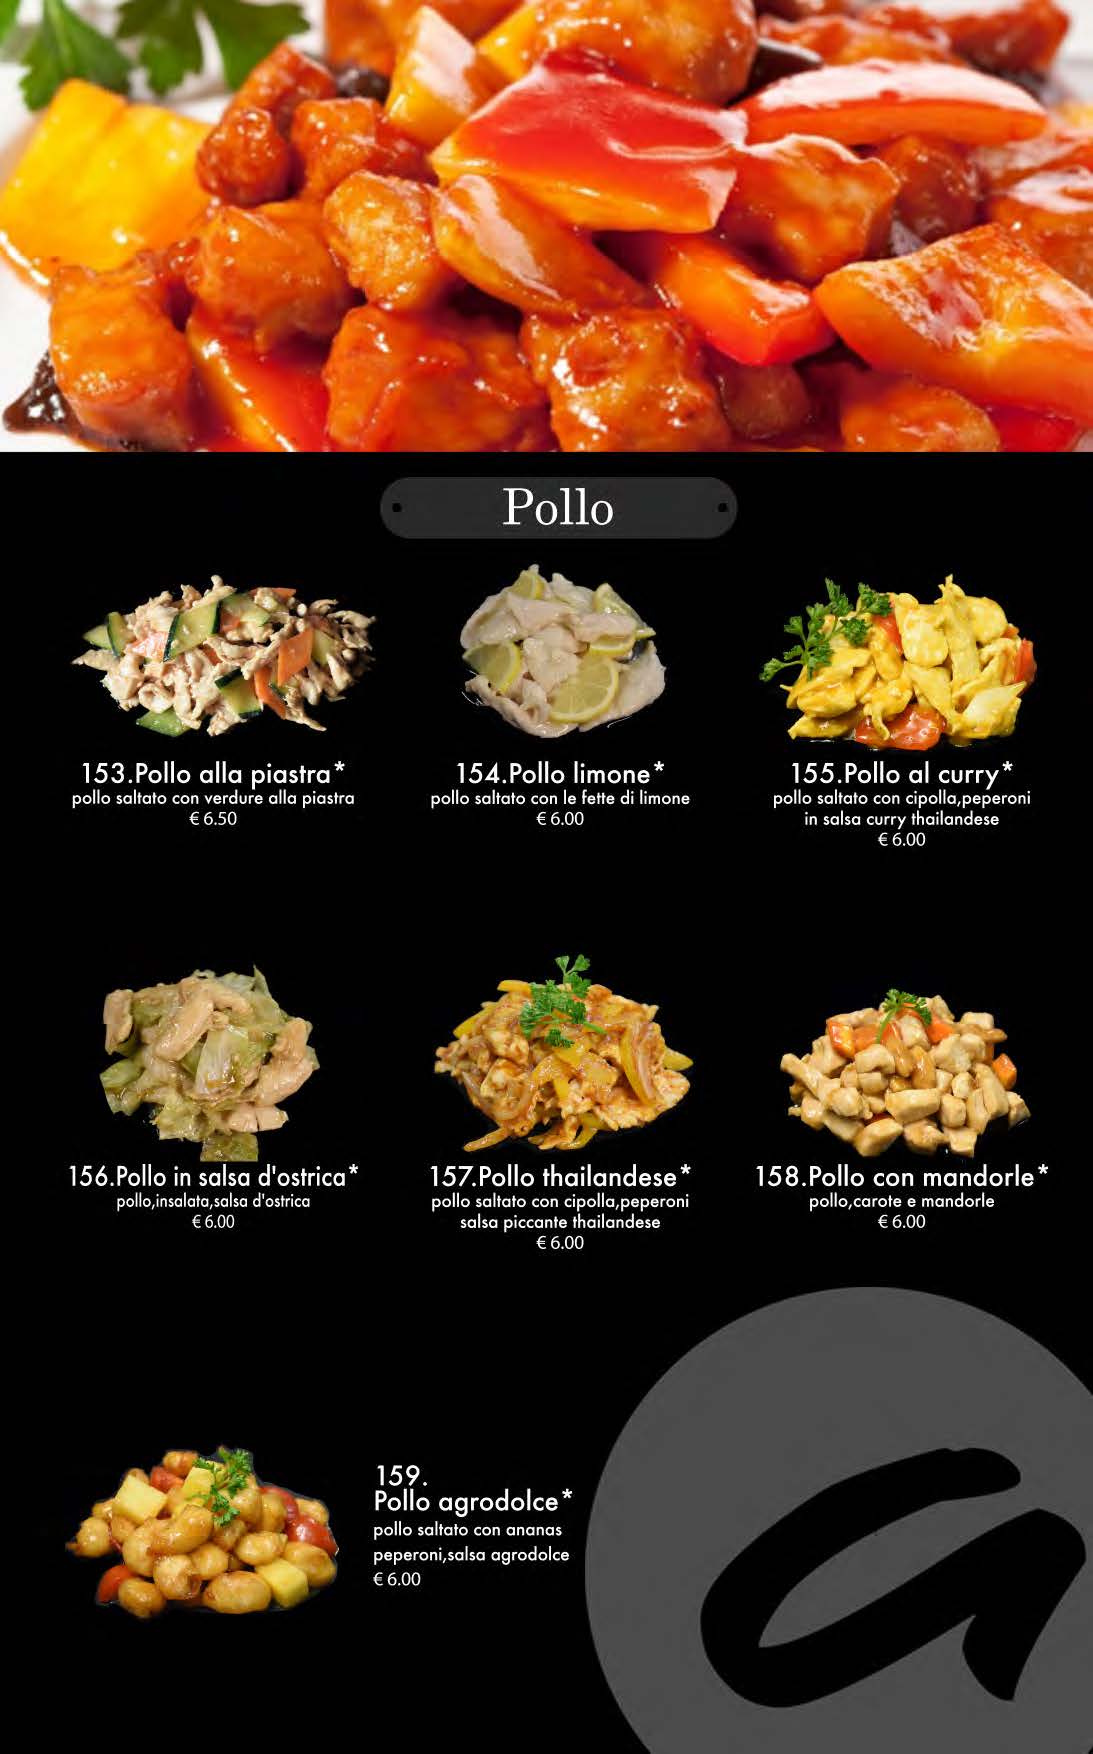 attimi ristorante giapponese padova menù cena pagina 15 pollo